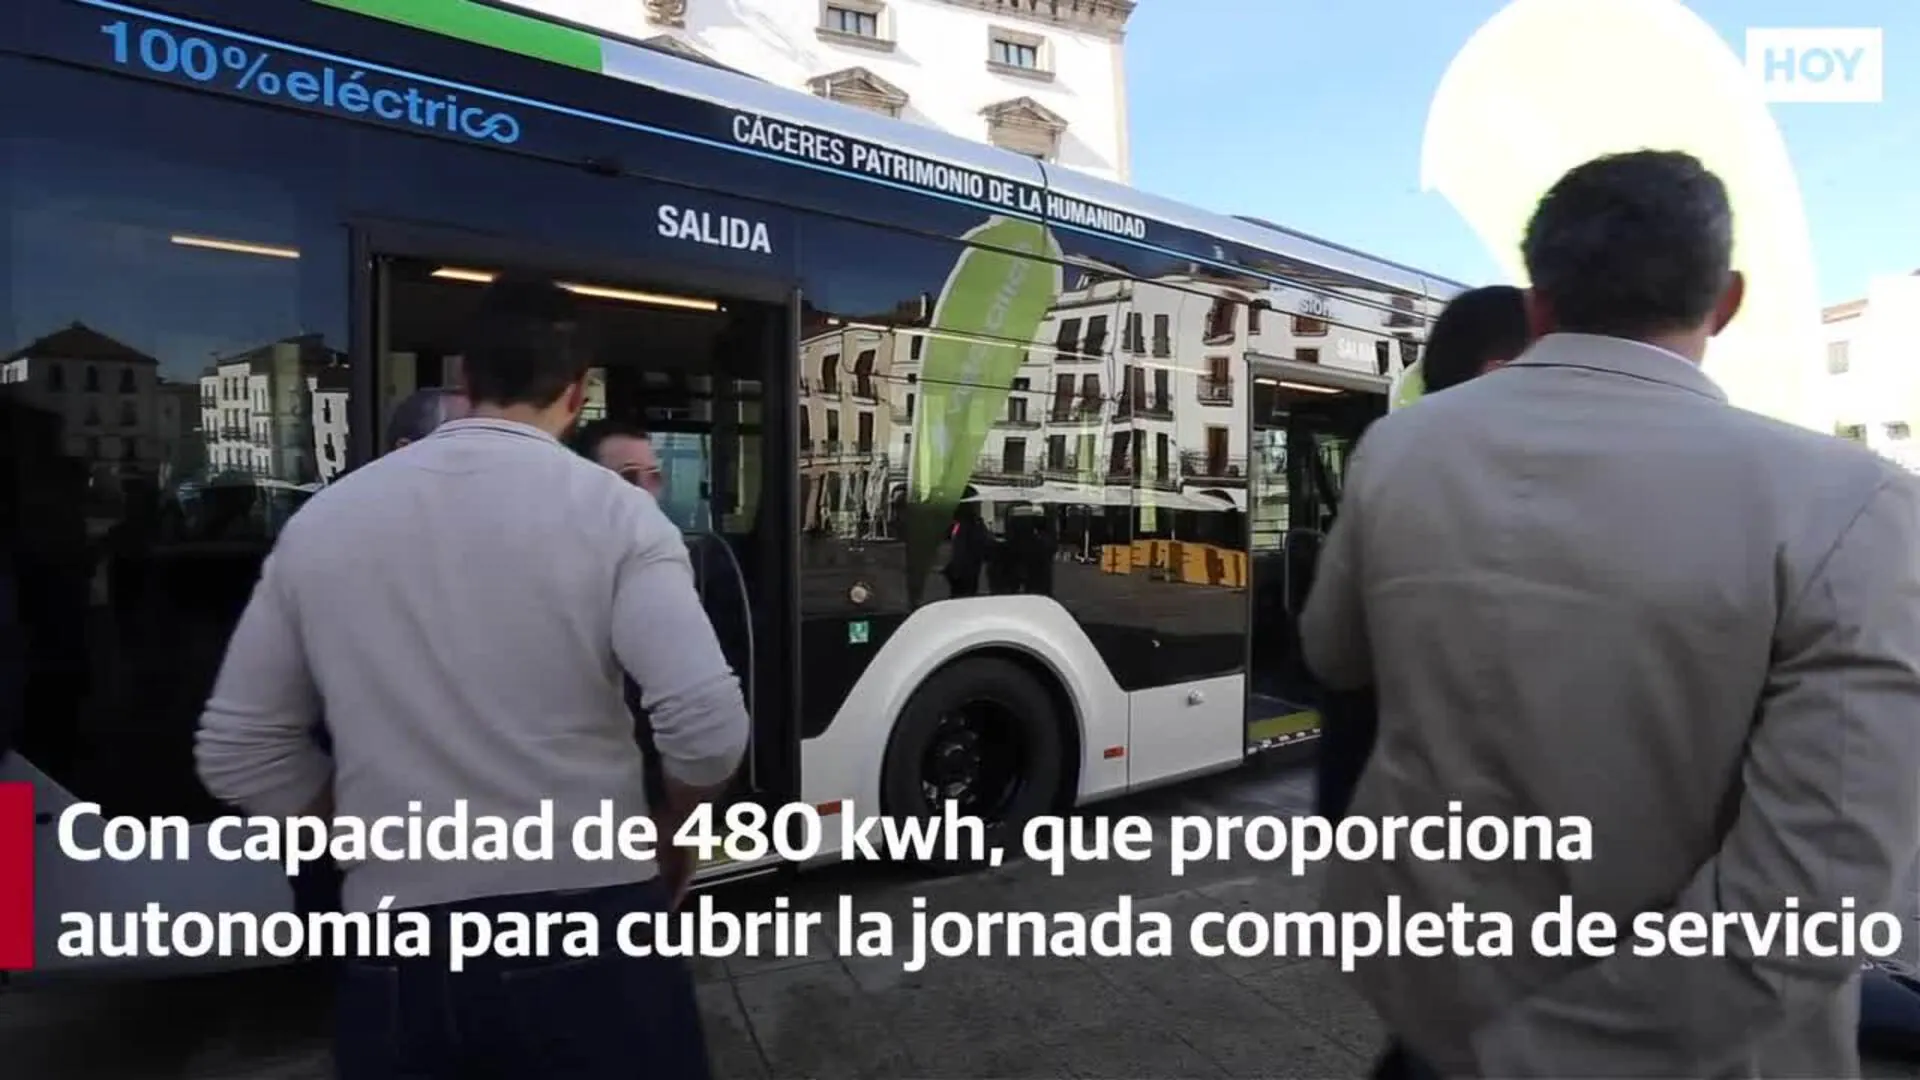 Cáceres cuenta ya con el primer autobús totalmente eléctrico